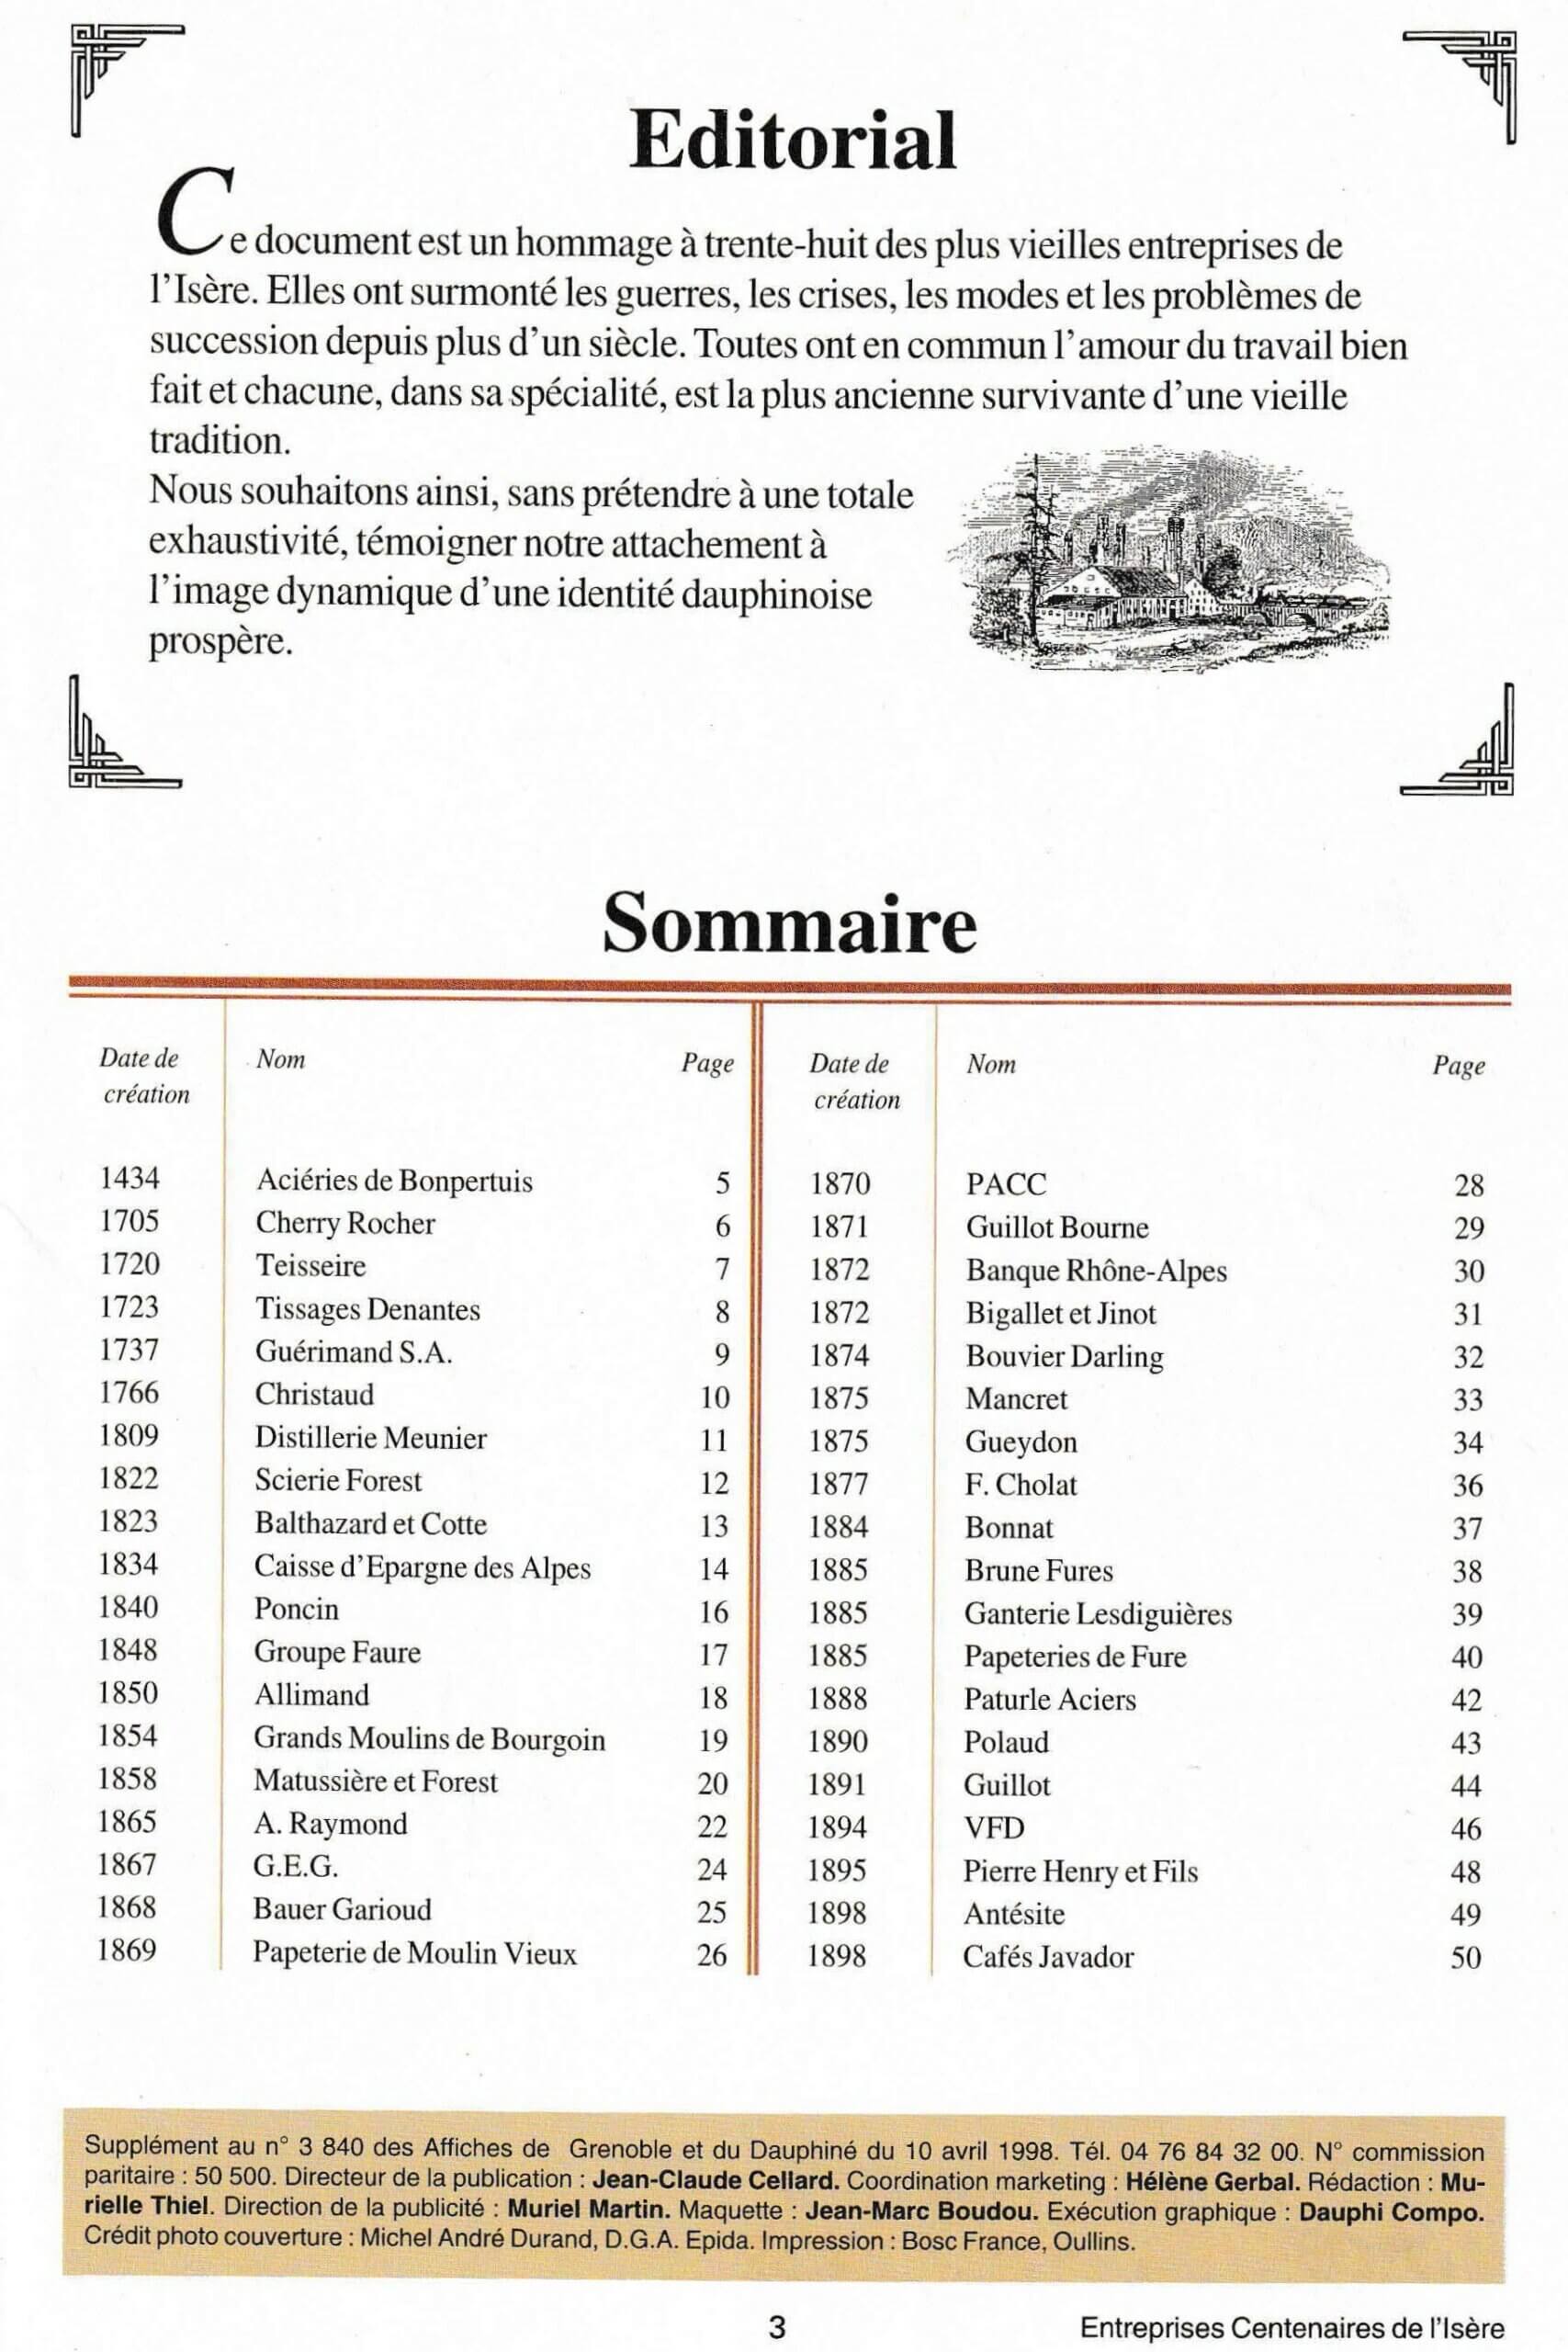 Sommaire du supplément "Entreprises centenaires en Isère" de la revue Les Affiches de Grenoble et du Daupniné, juin 1998